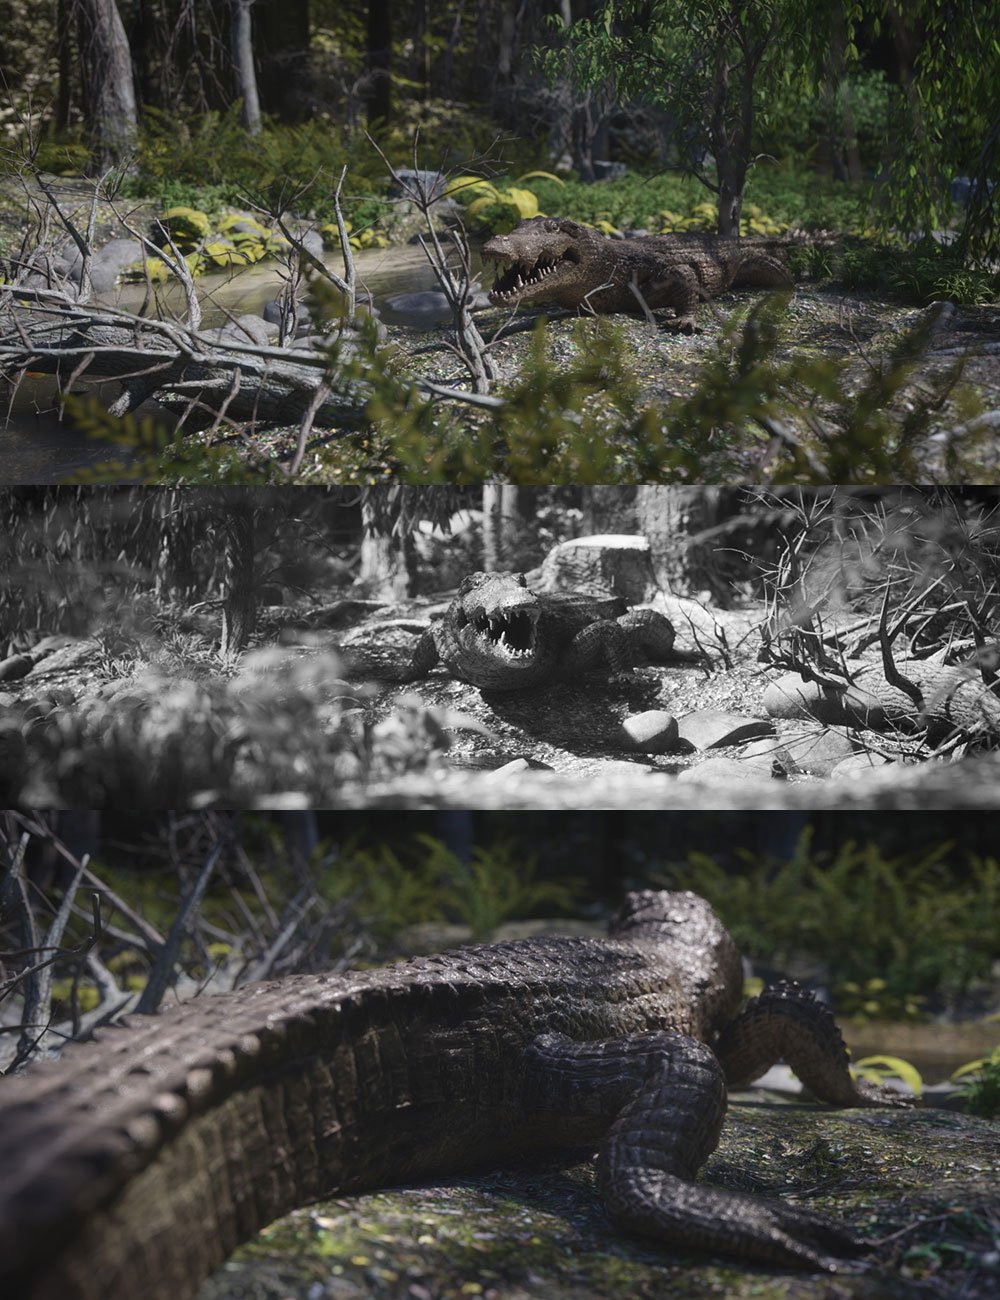 HD Scans Crocodile Prop by: Dreamlight, 3D Models by Daz 3D